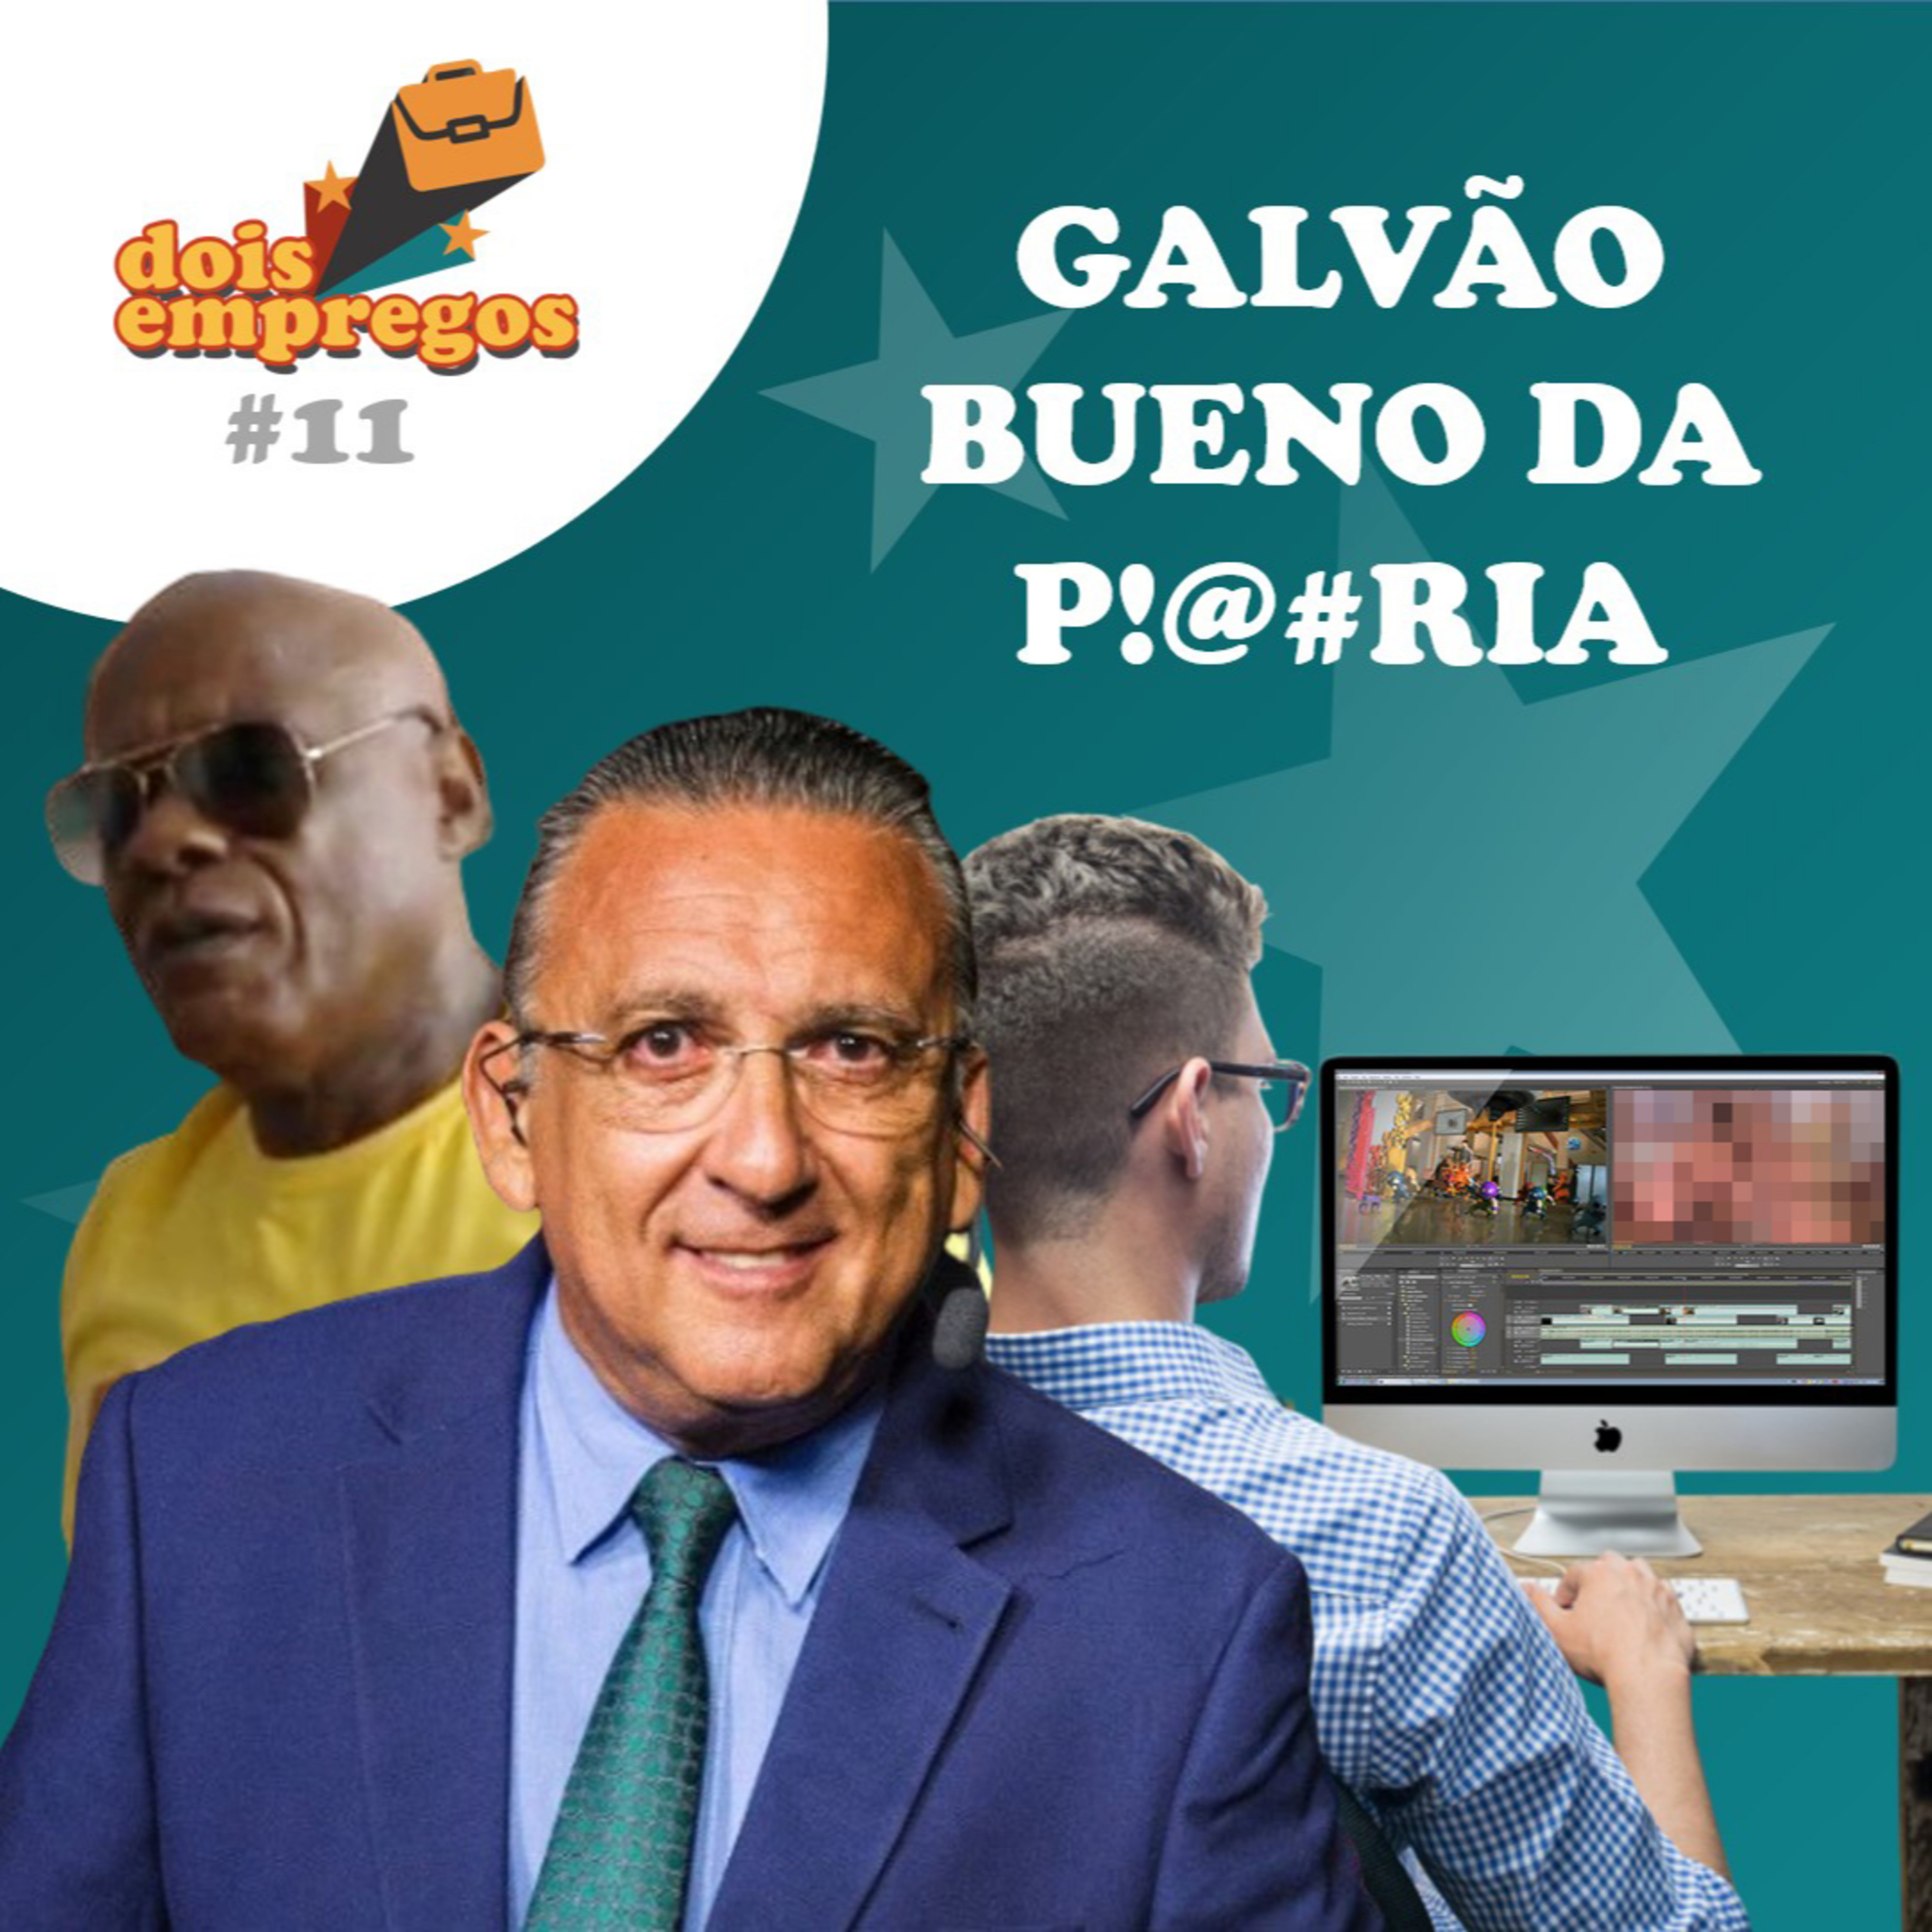 #11 - Galvão Bueno da P!@#ria (ft. Felipe Faria)